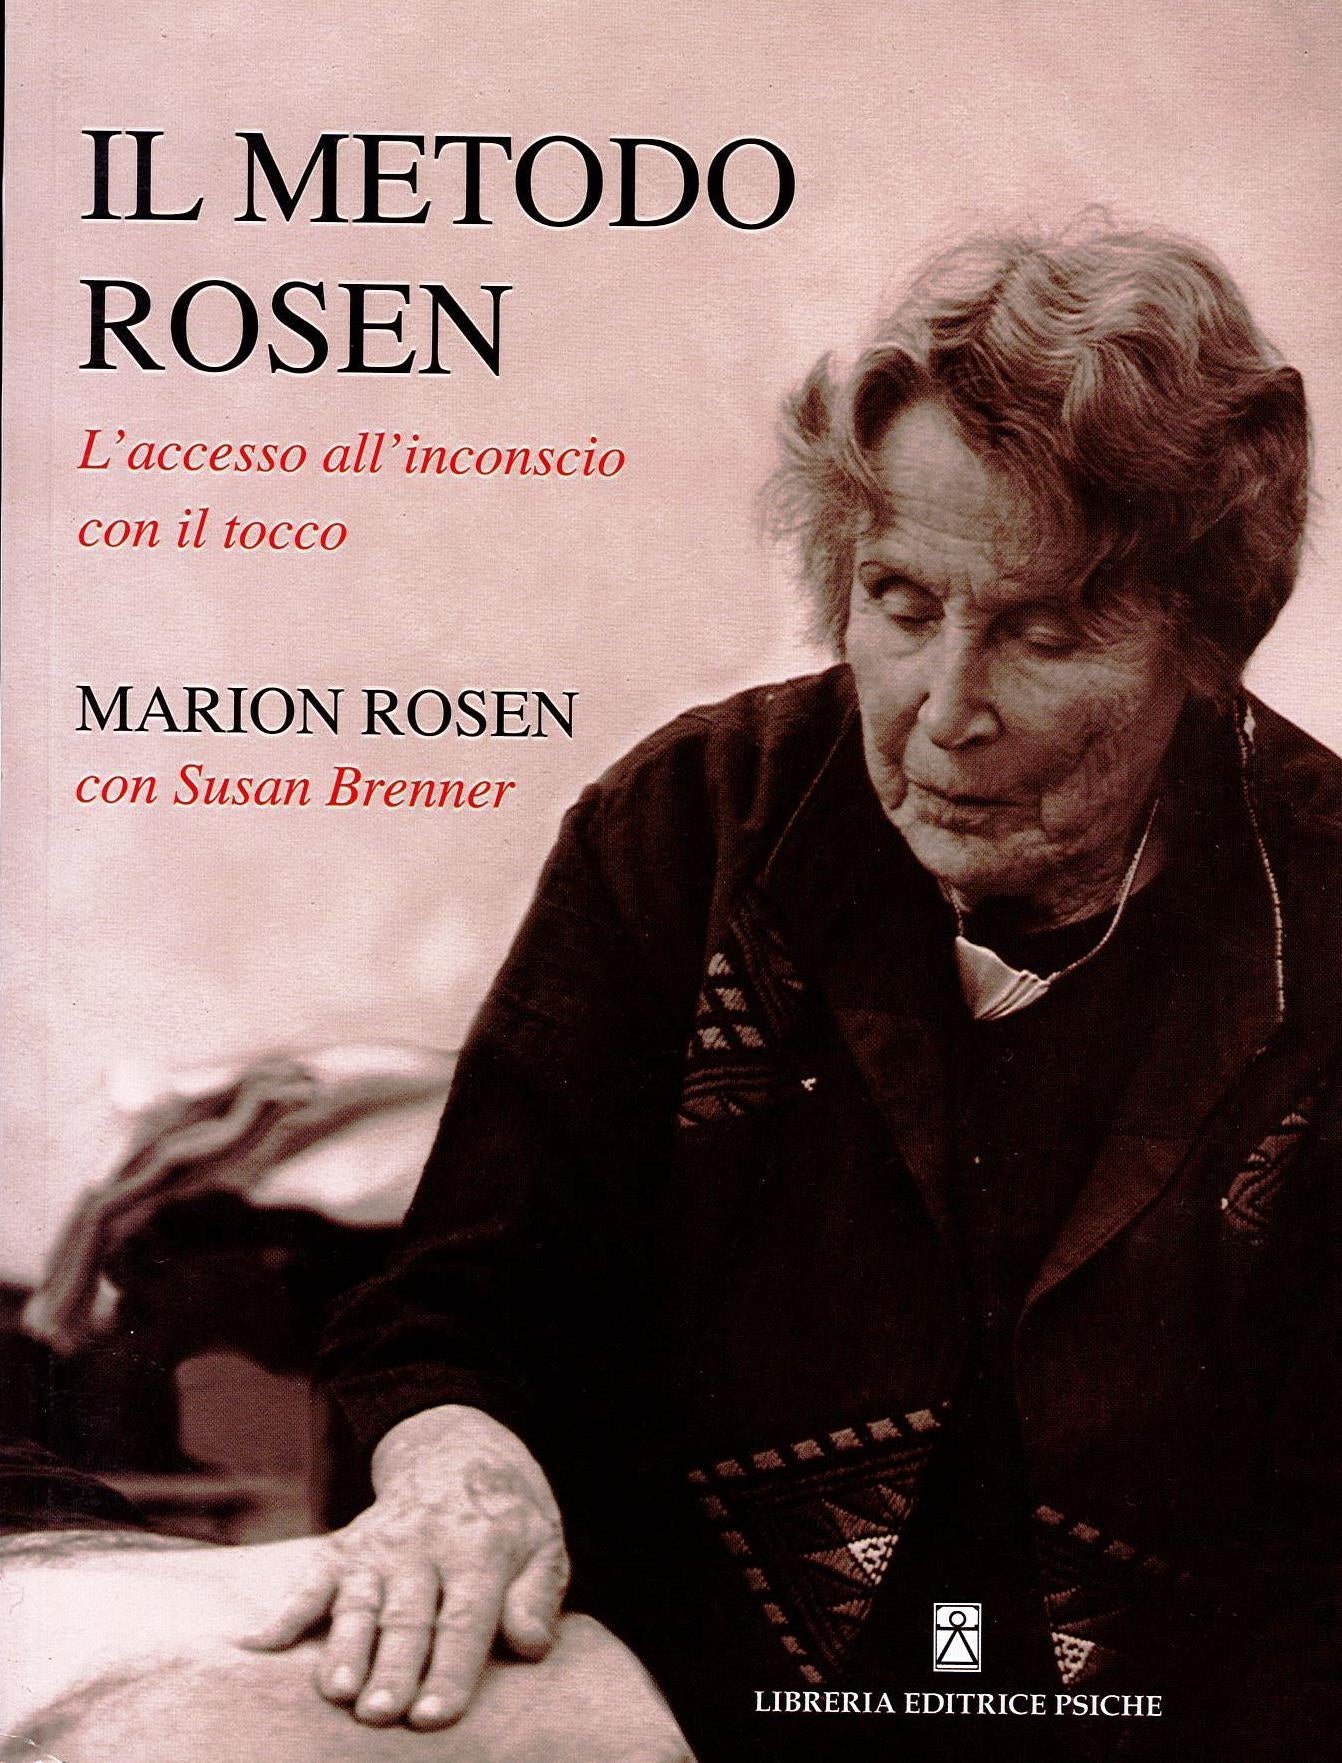 IL METODO ROSEN - Marion Rosen